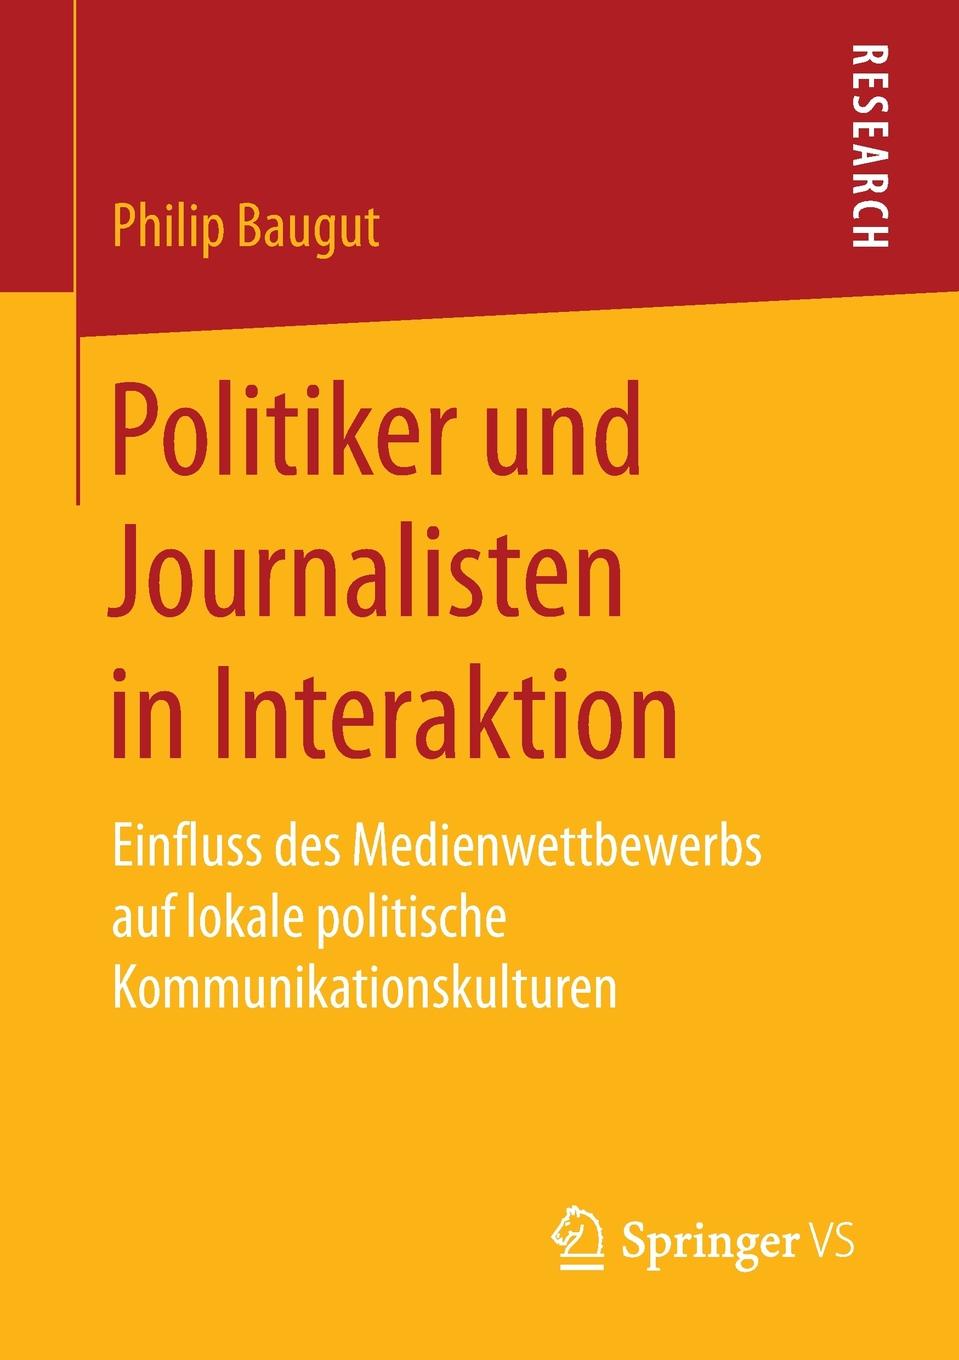 Politiker und Journalisten in Interaktion. Einfluss des Medienwettbewerbs auf lokale politische Kommunikationskulturen